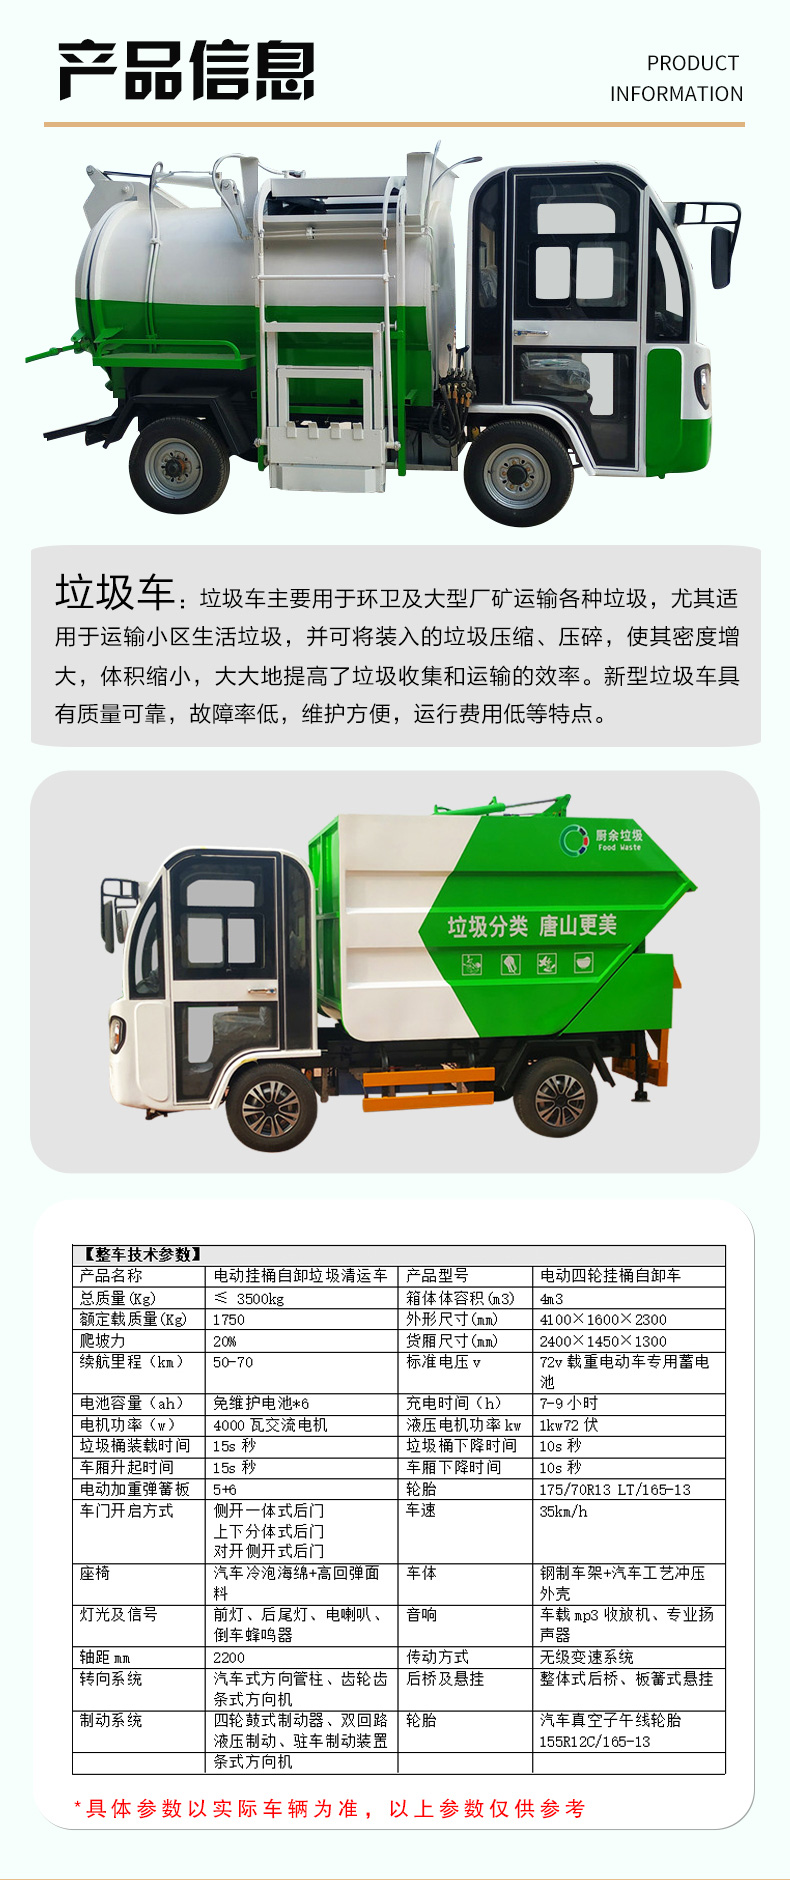 摩托三轮垃圾车 新能源挂桶垃圾车价格 多功能垃圾清运车